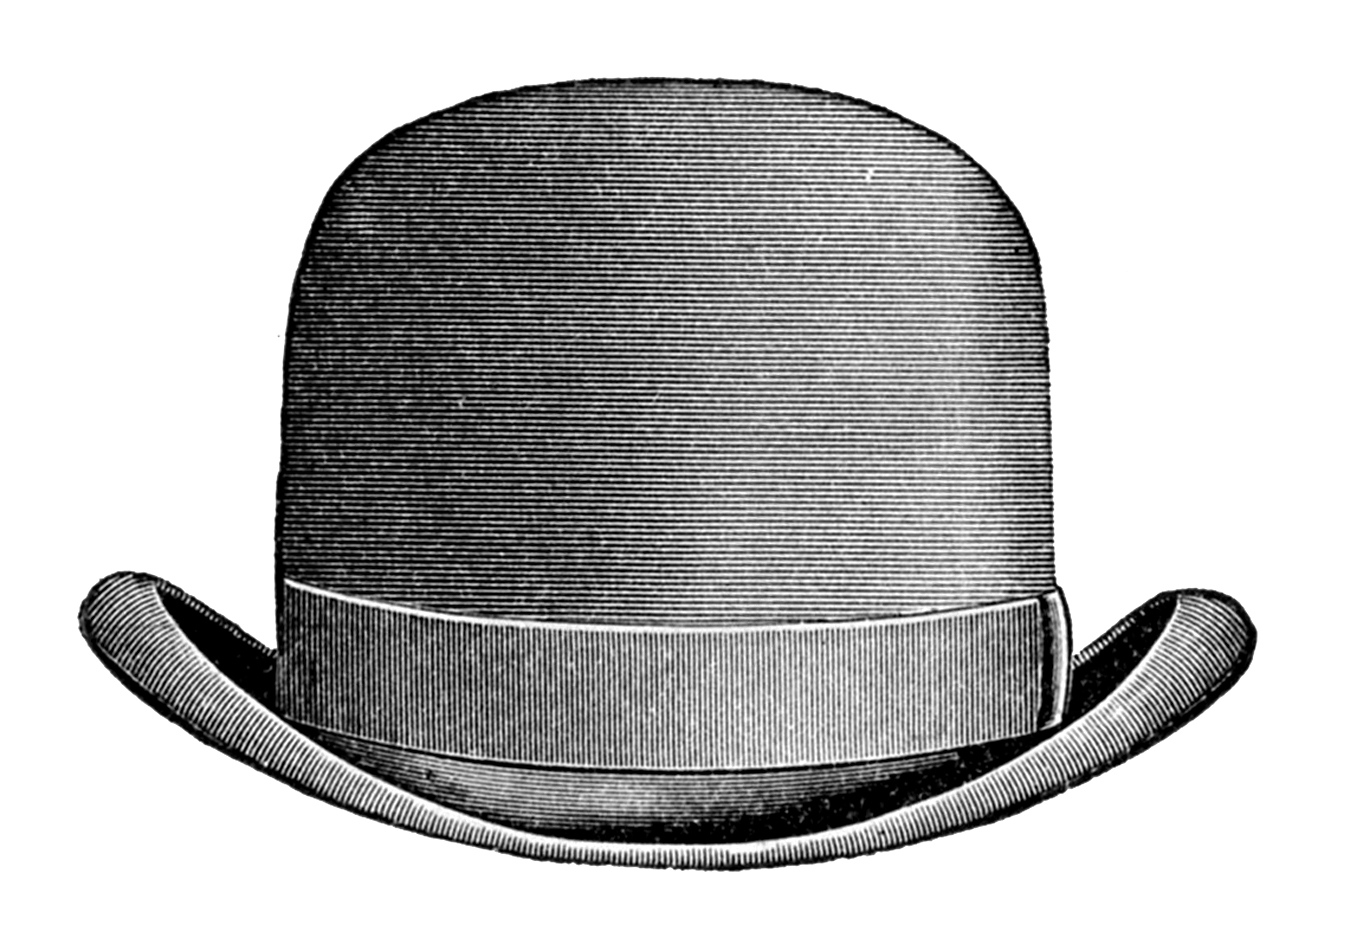 Vintage Clip Art   Men S Hats   Derby   Top Hat   The Graphics Fairy